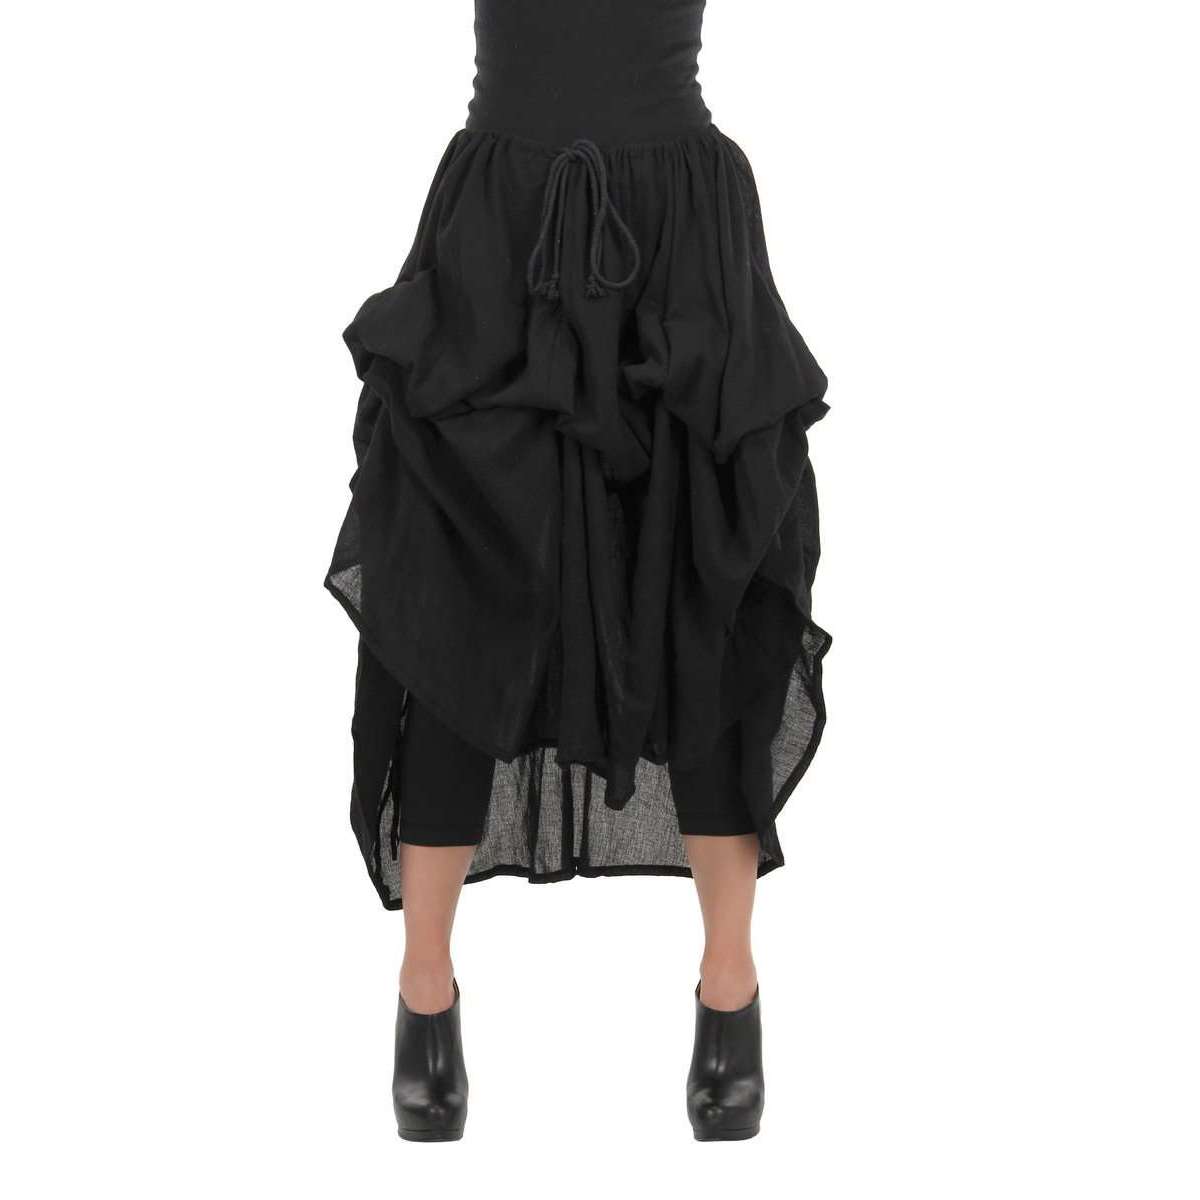 Black Parachute Skirt